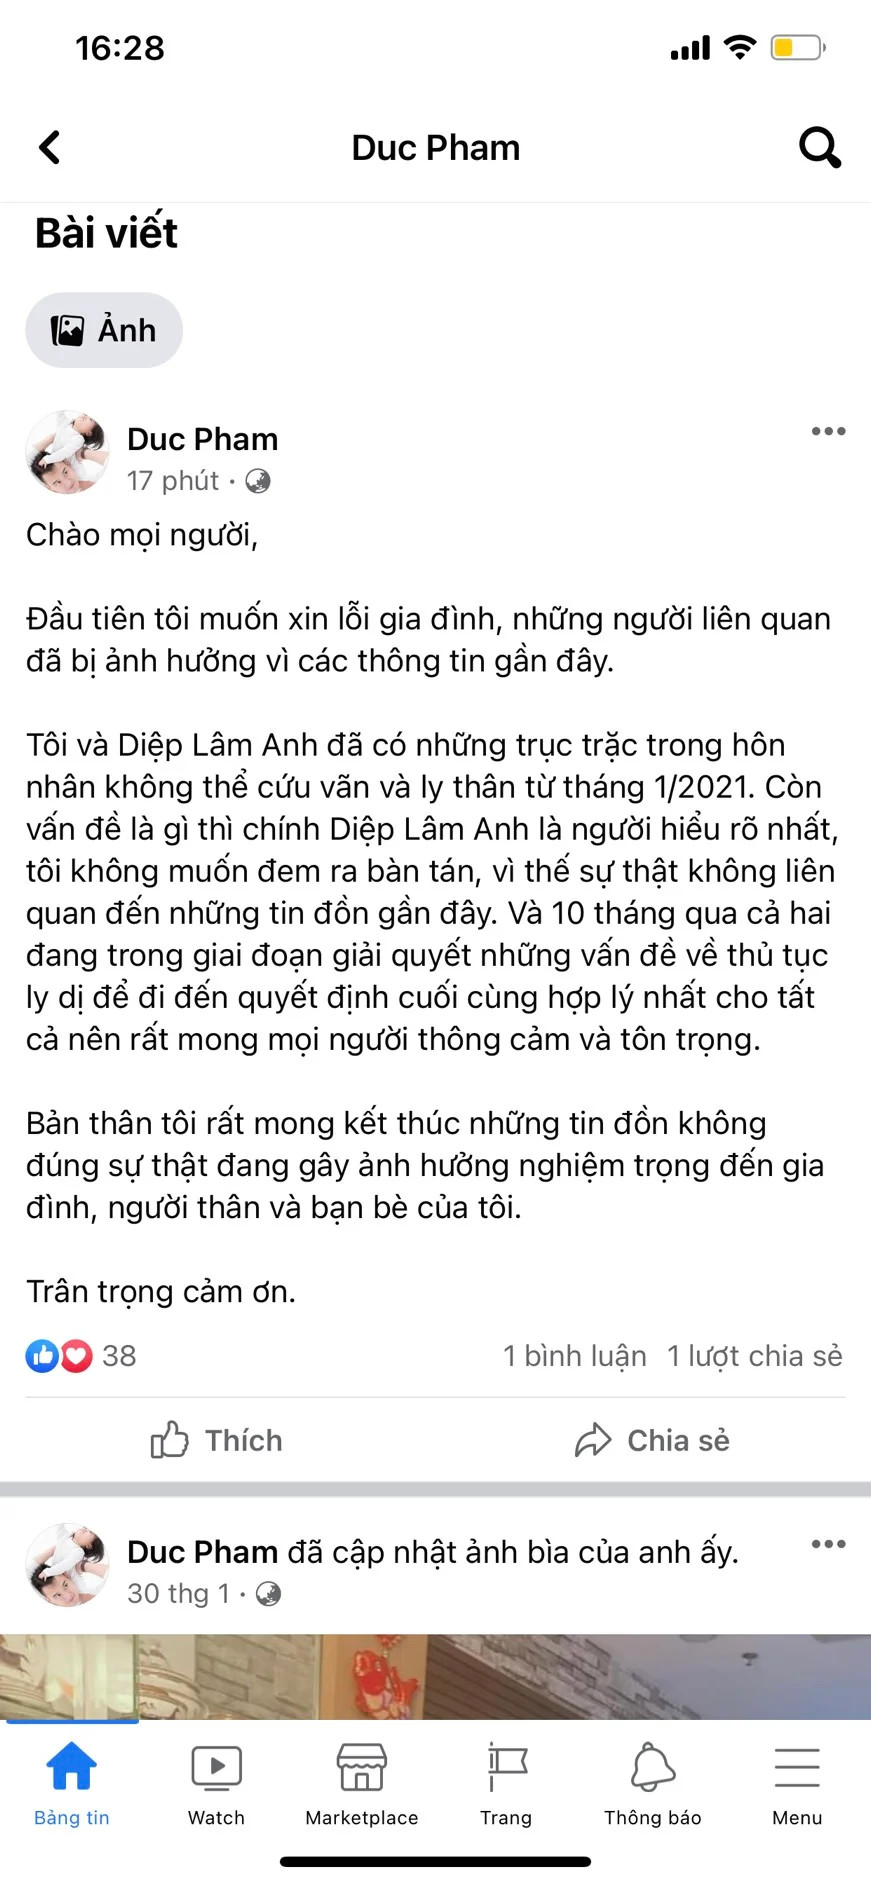 Động thái của Quỳnh Thư sau khi chồng Diệp Lâm Anh xác nhận ly thân - Ảnh 1